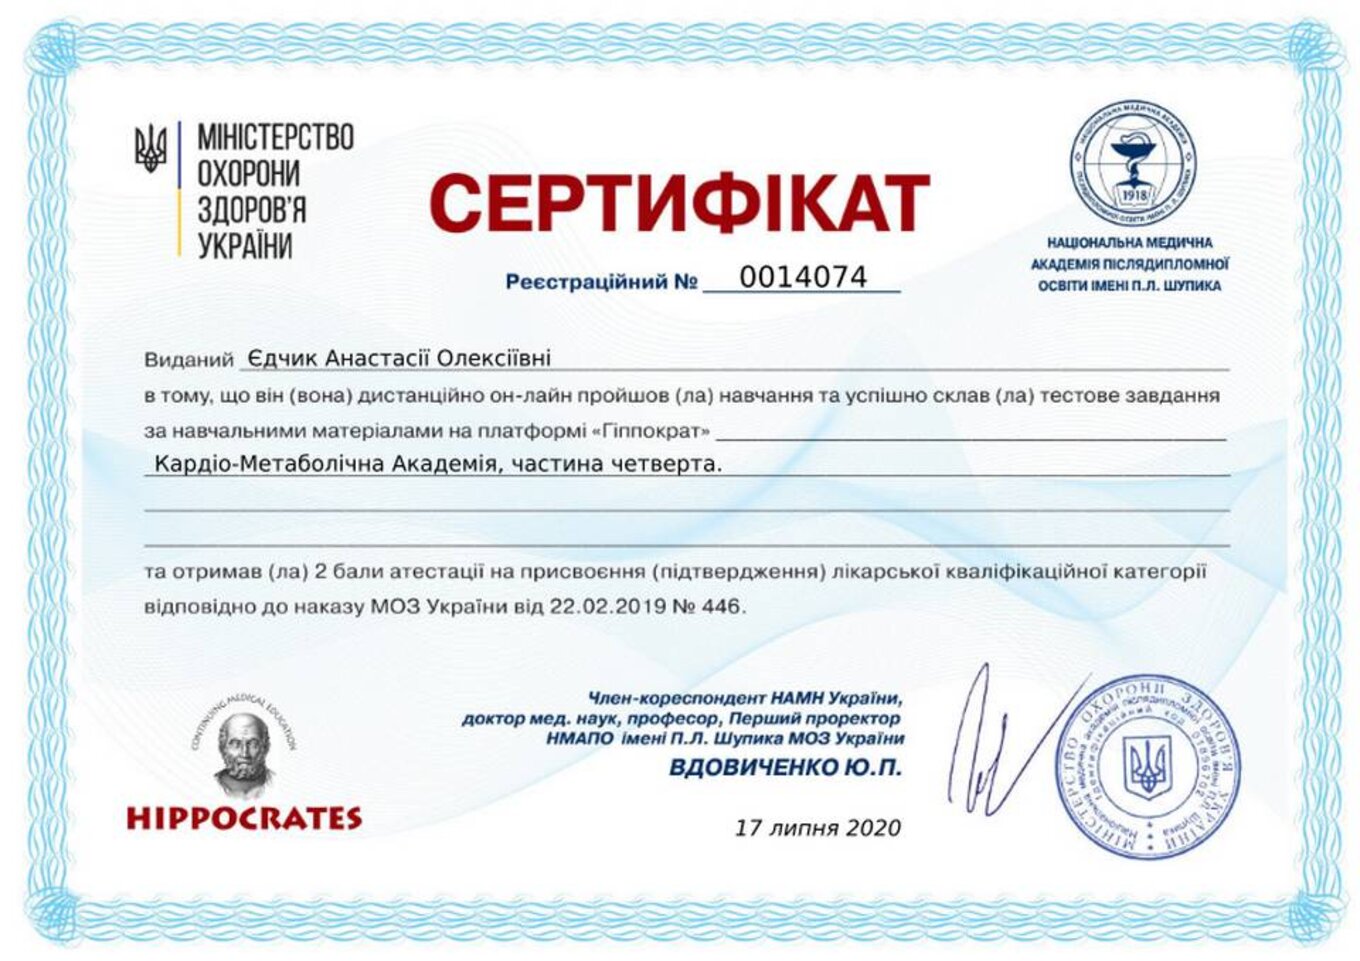 certificates/yedchik-anastasiya-oleksiyivna/erc-edchik-cert-61.jpg